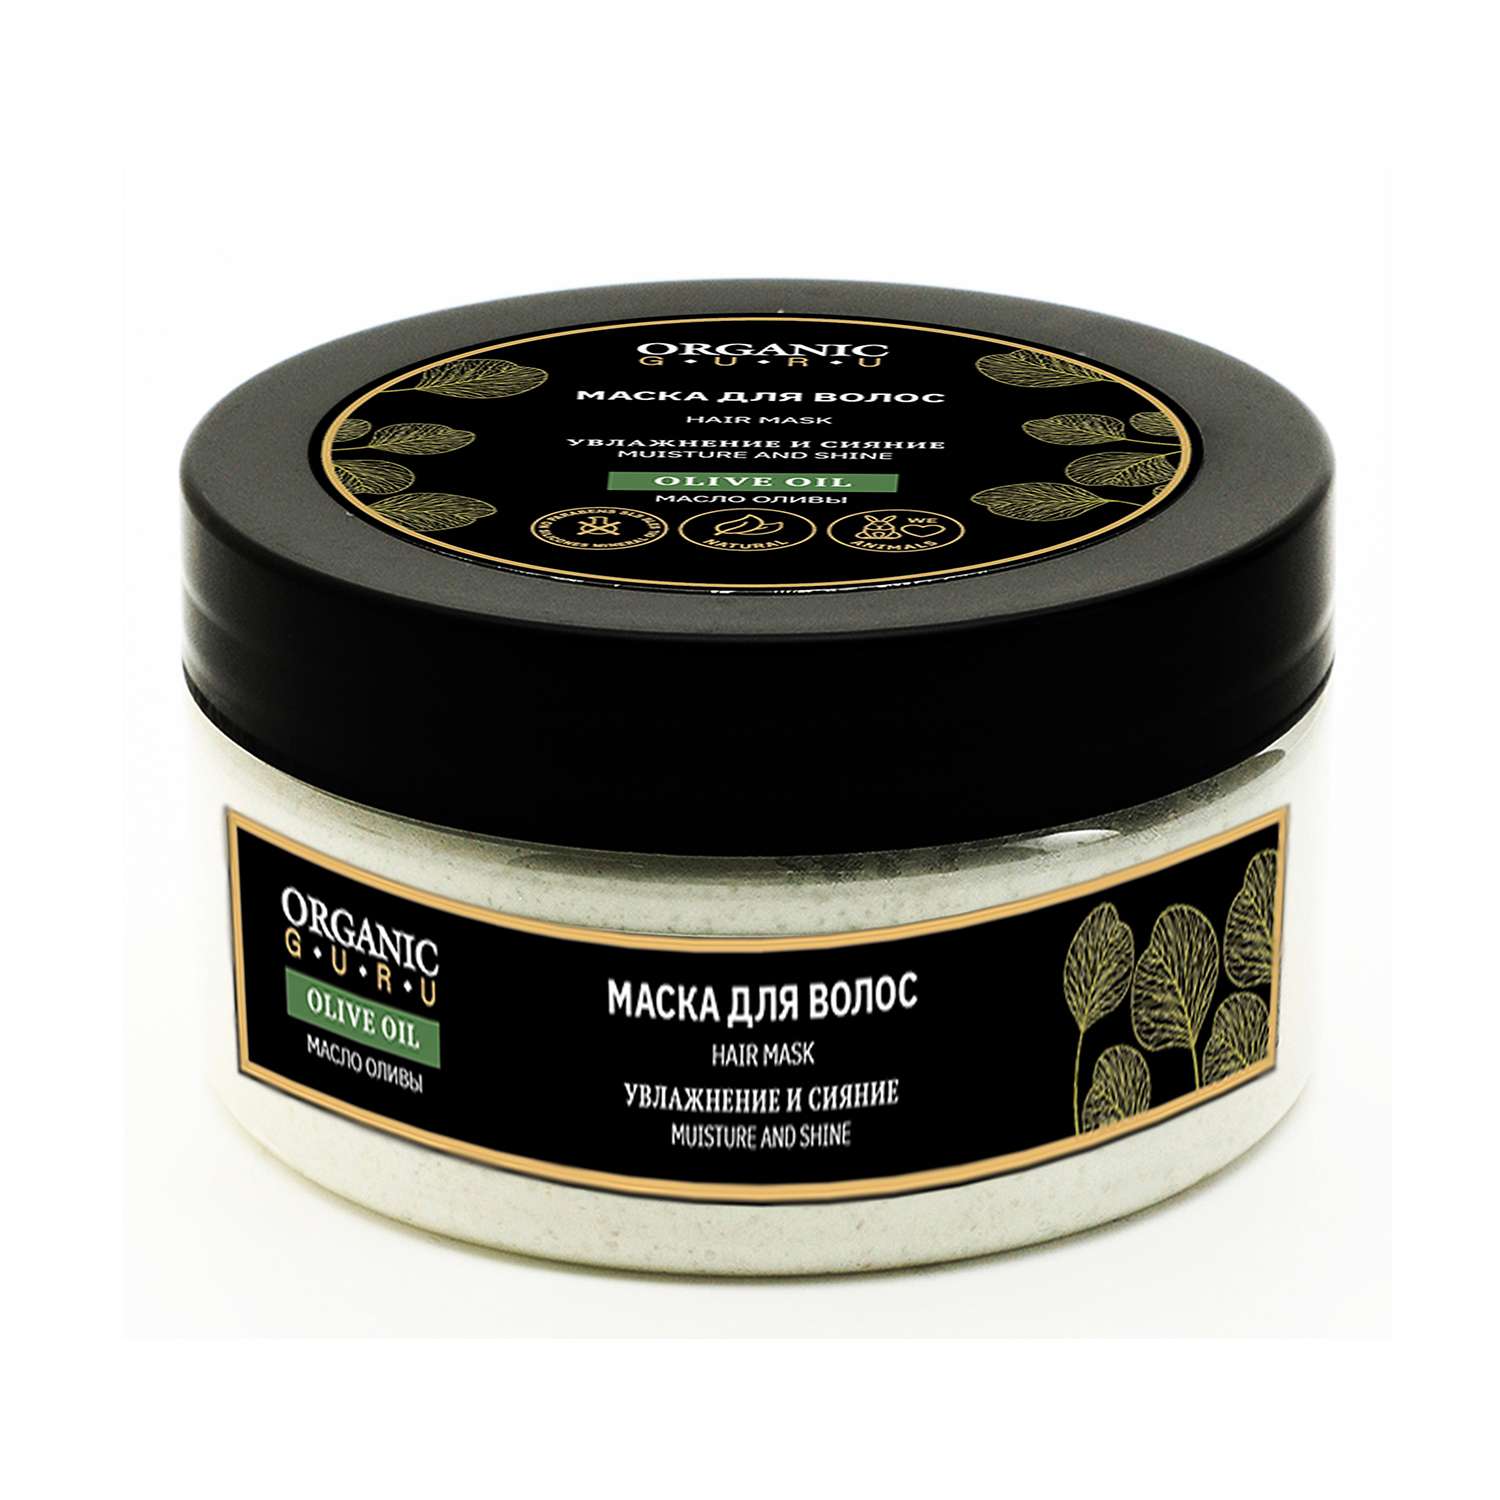 Маска для волос Organic Guru Olive oil 200мл - фото 1